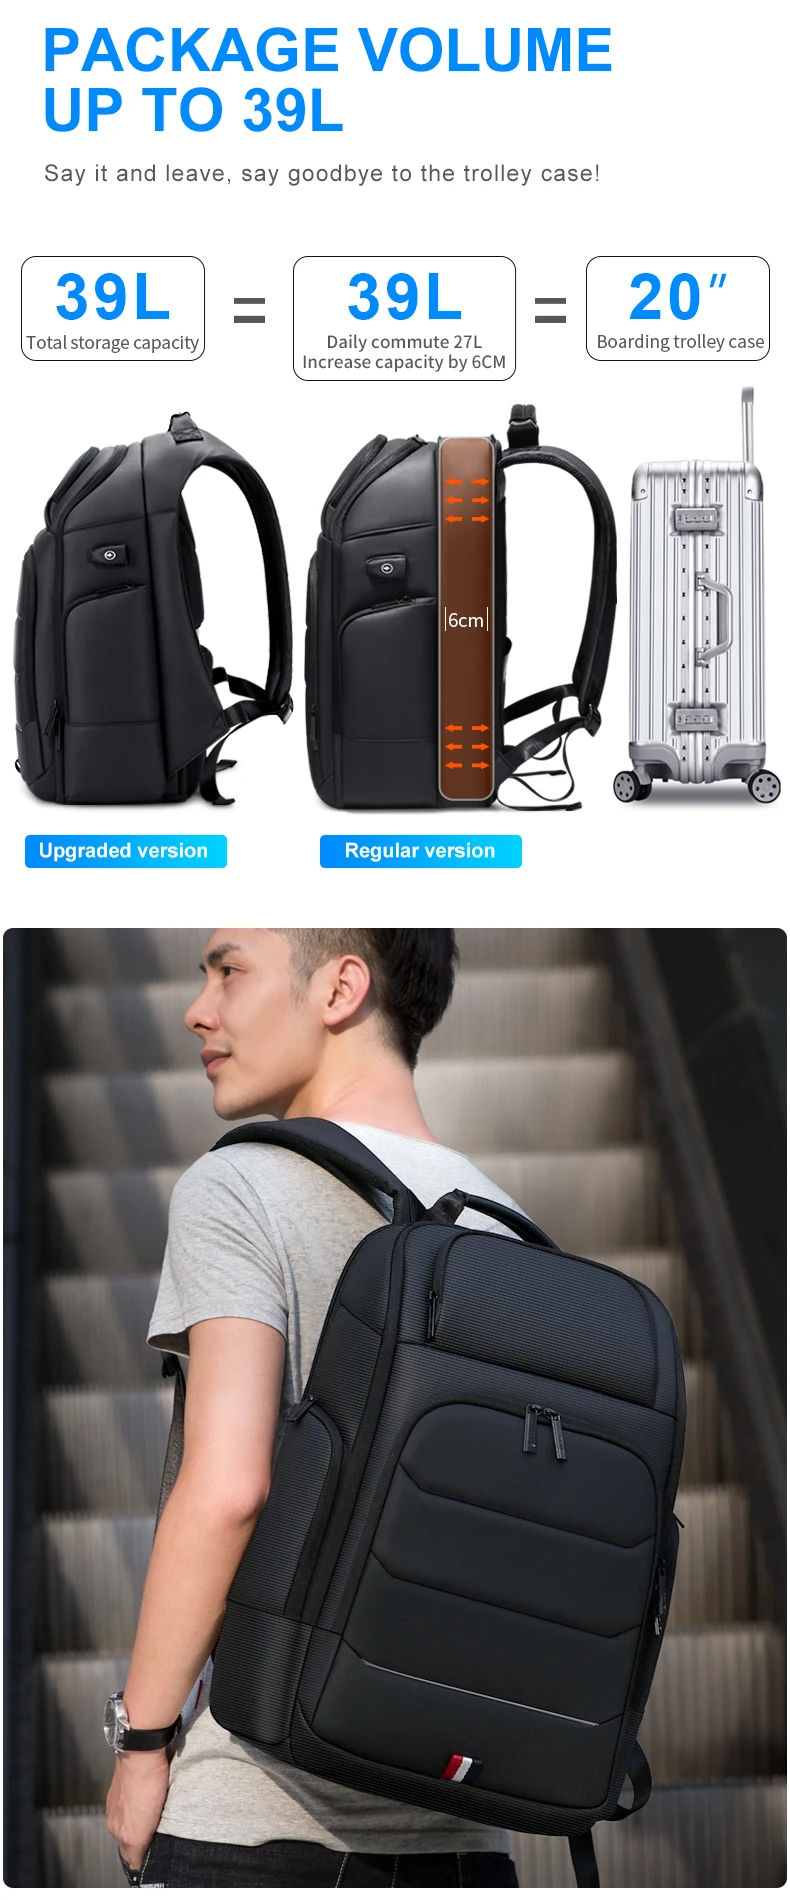 FRN многофункциональный мужской рюкзак с usb-зарядкой, водонепроницаемый мужской рюкзак 15,6 дюймов, сумка для ноутбука, деловая Вместительная дорожная сумка